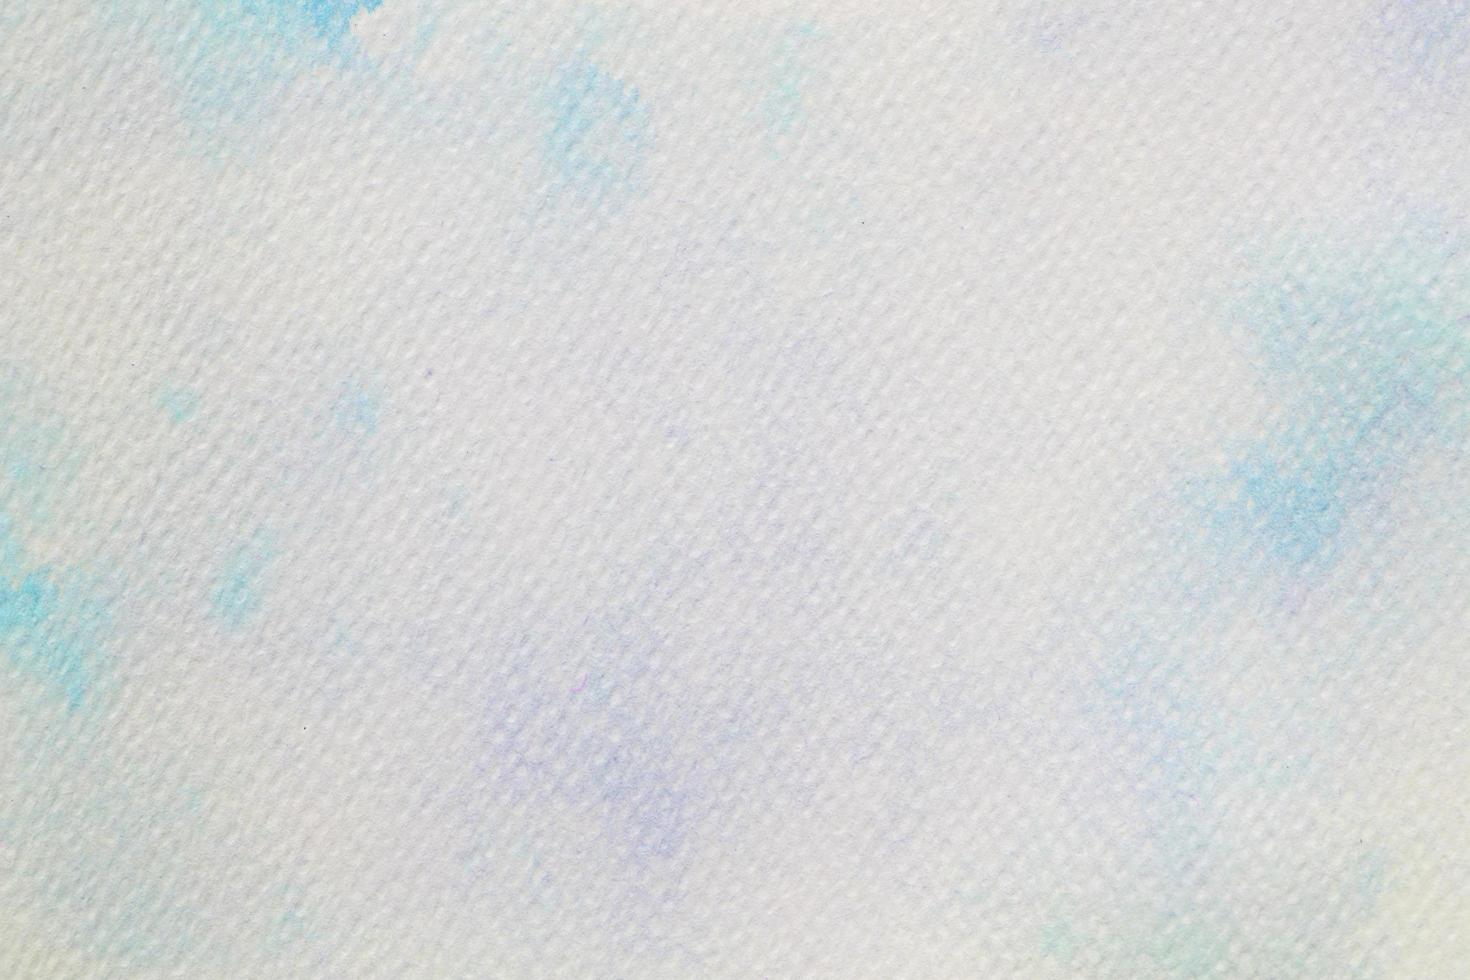 acquerello blu su carta bianca, sfondo astratto foto